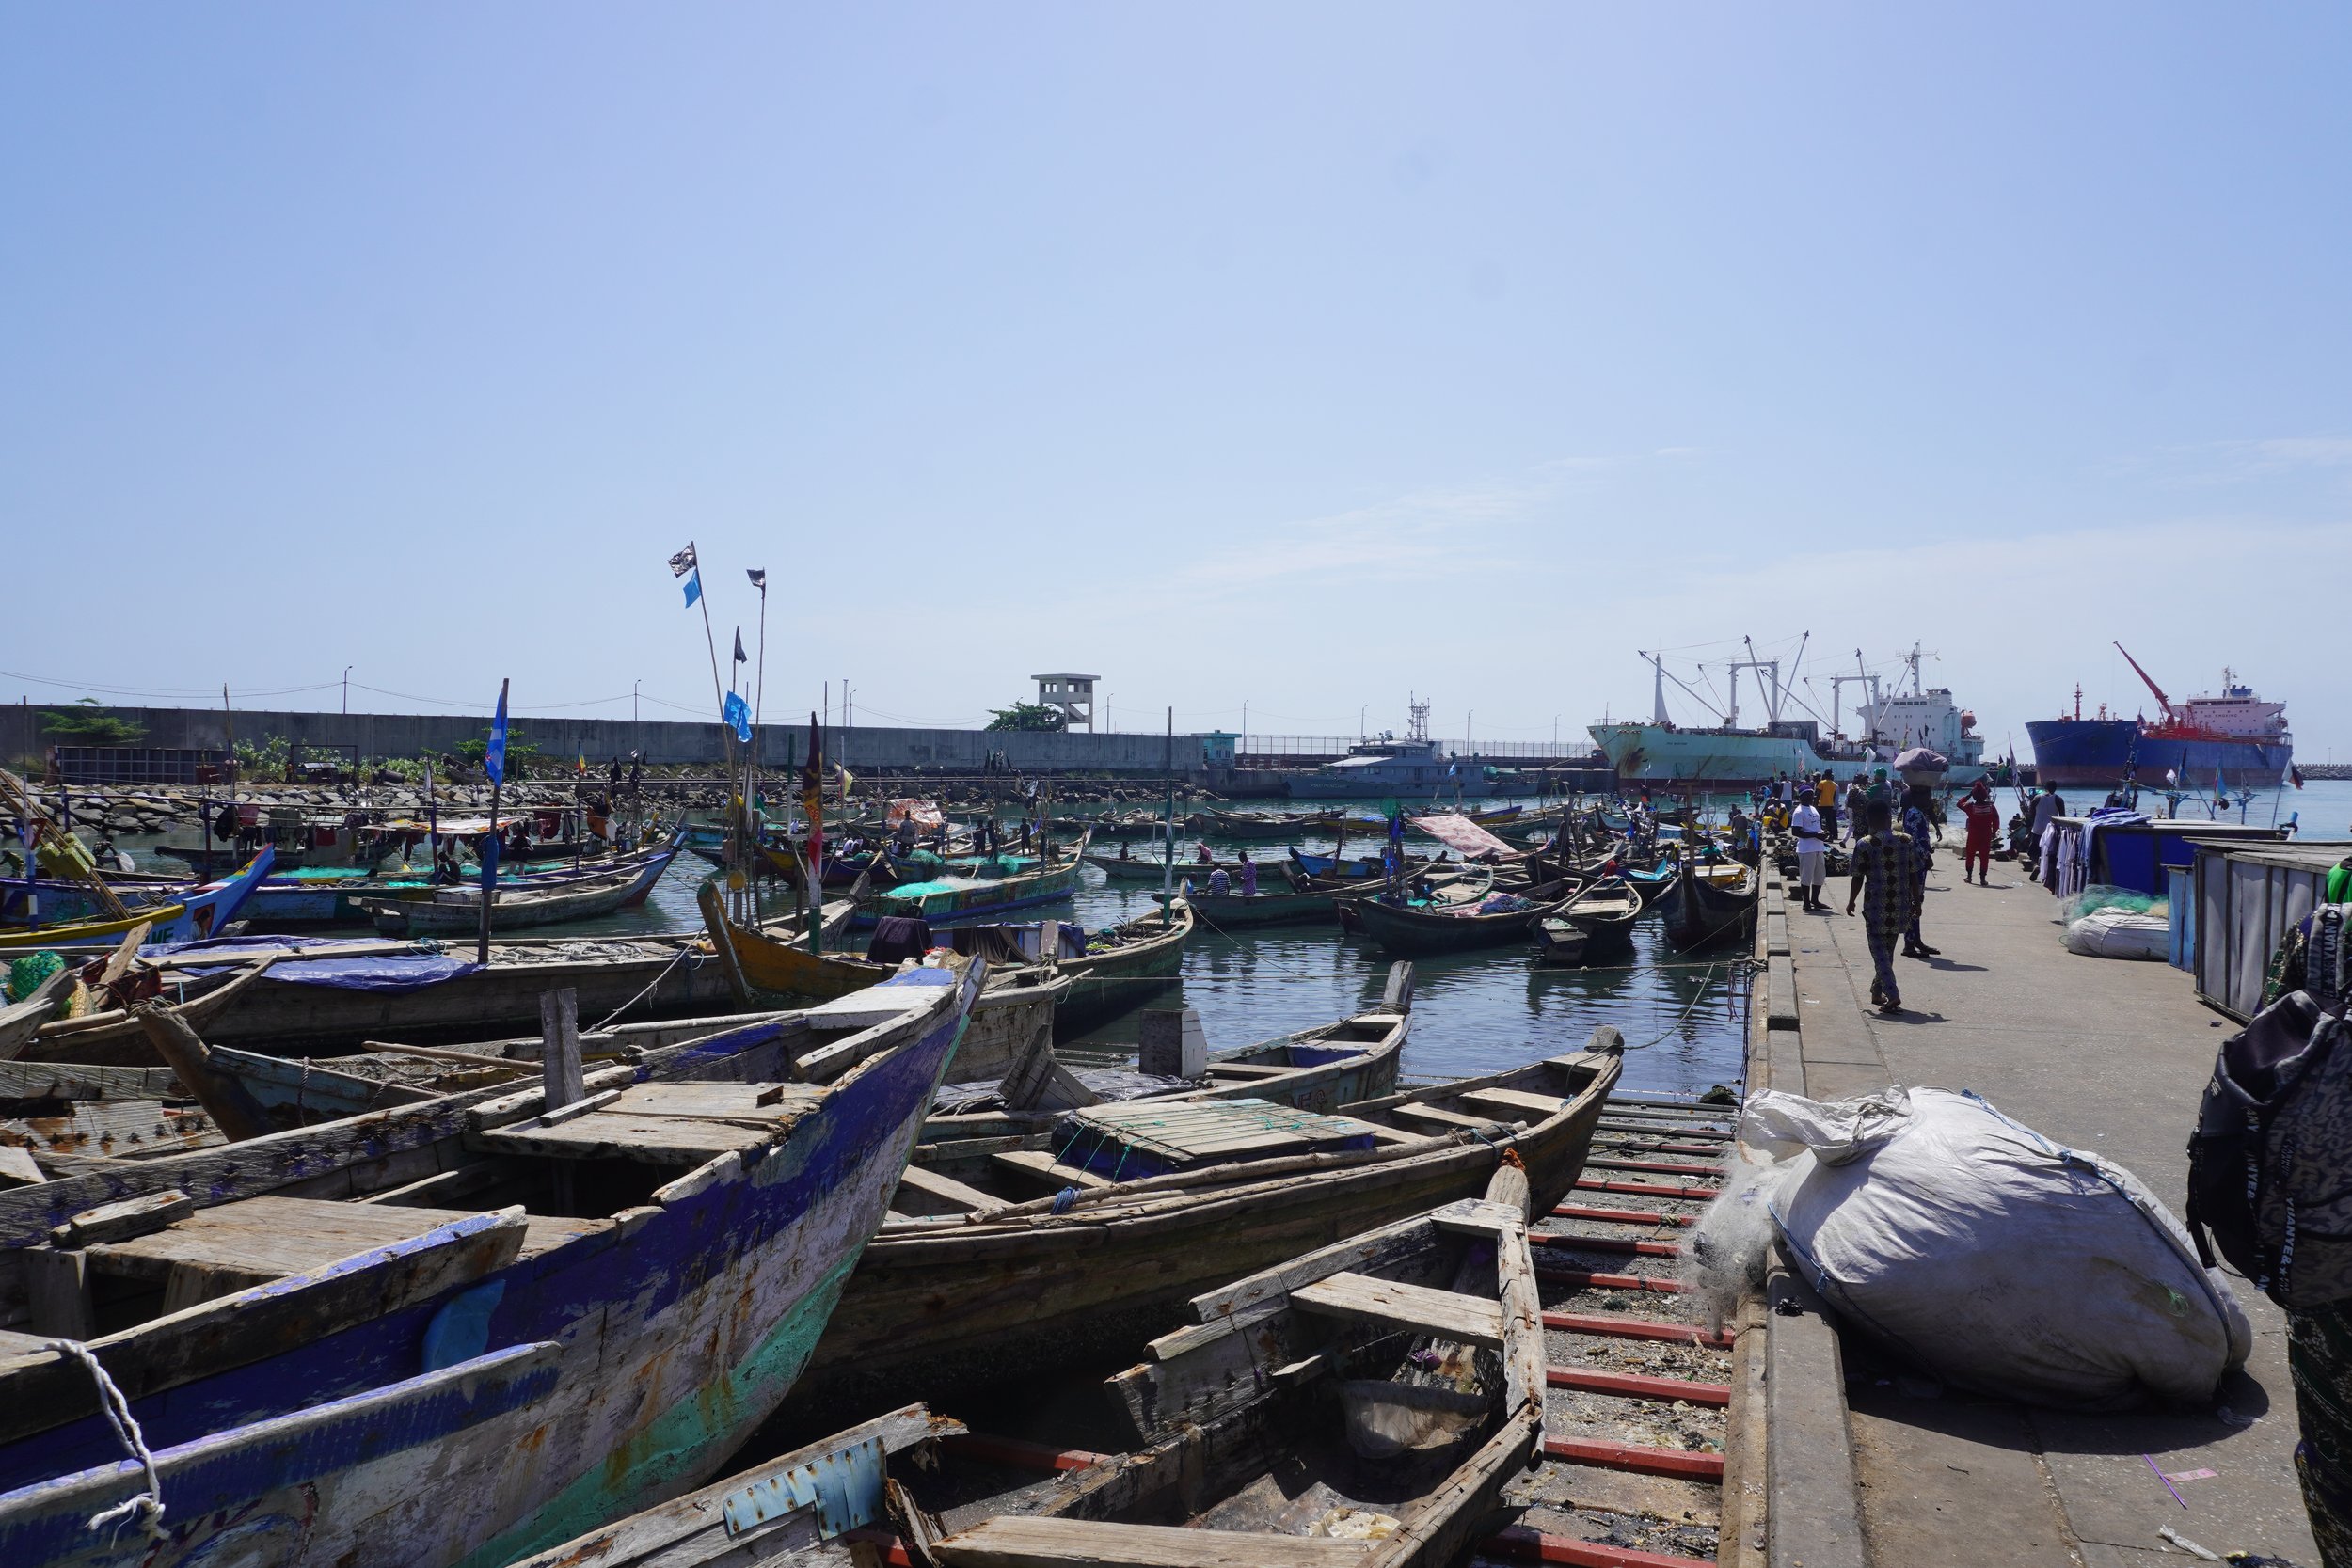  Le port de pêche artisanale de Cotonou est situé à côté du Port Autonome et de la Base Navale béninoises. En 2022, plus de 33600 tonnes de poisson ont été débarquées par la pêche artisanale et industrielle.  